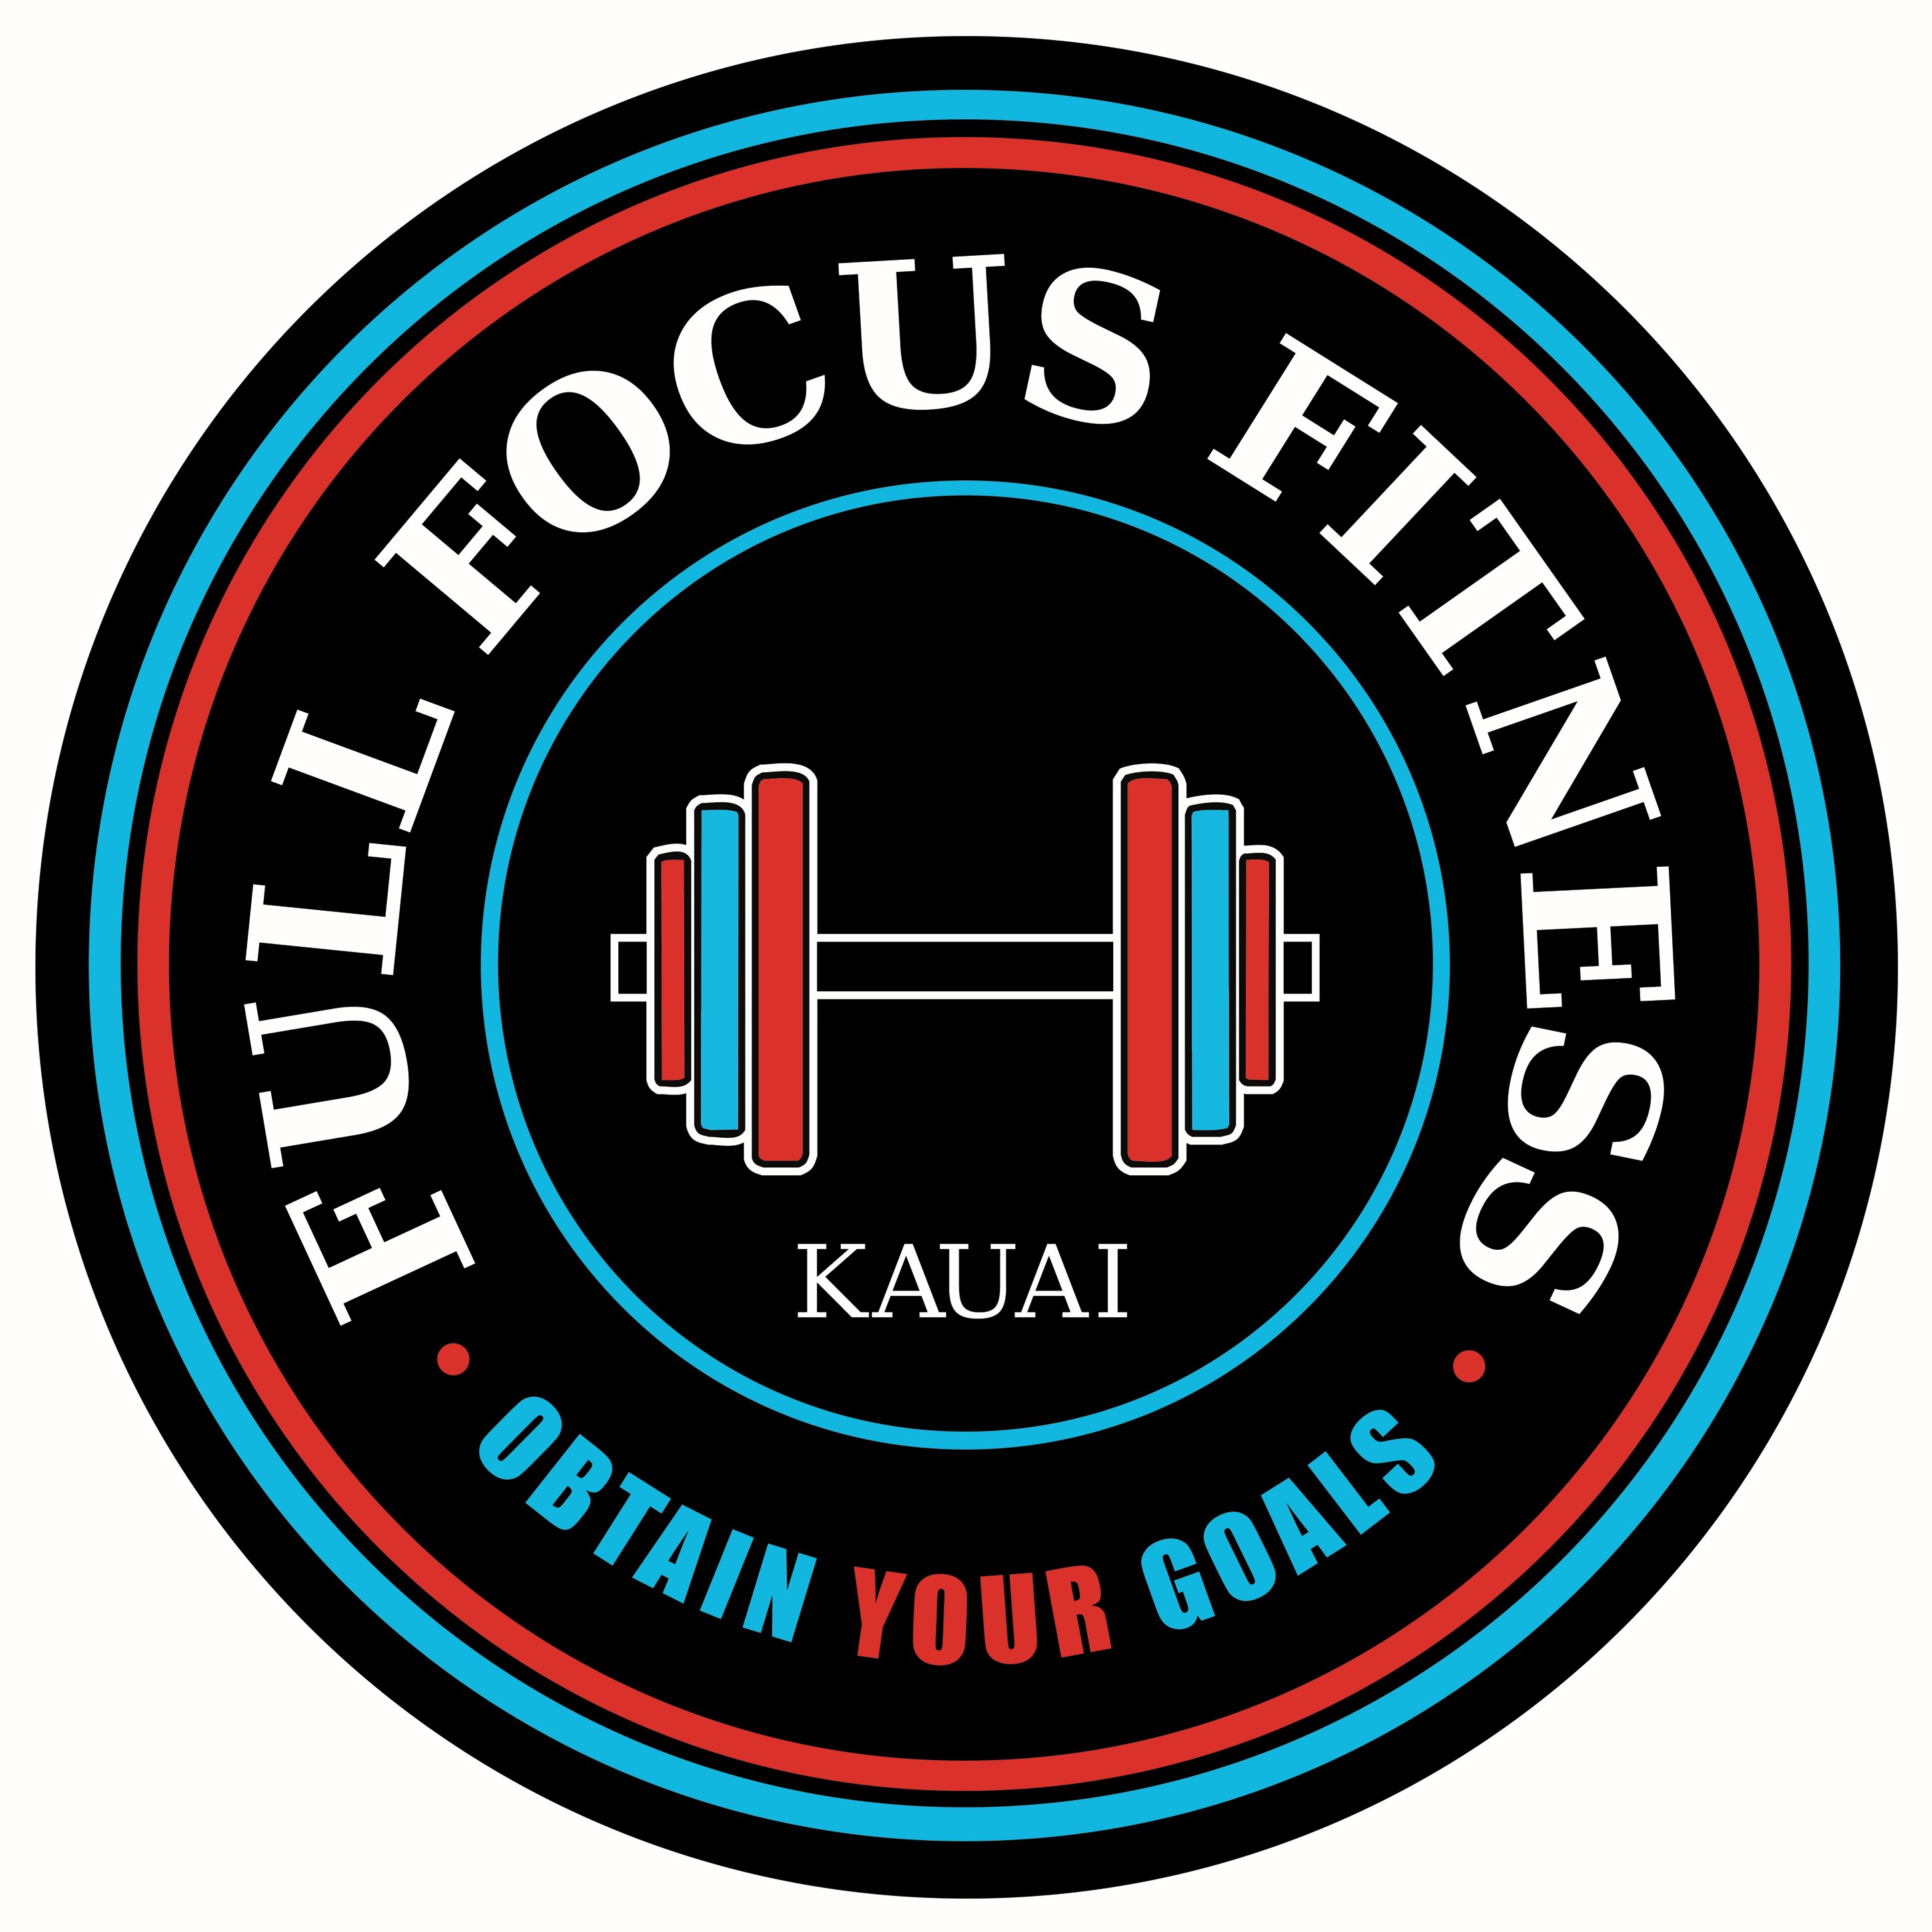 Full Focus Fitness